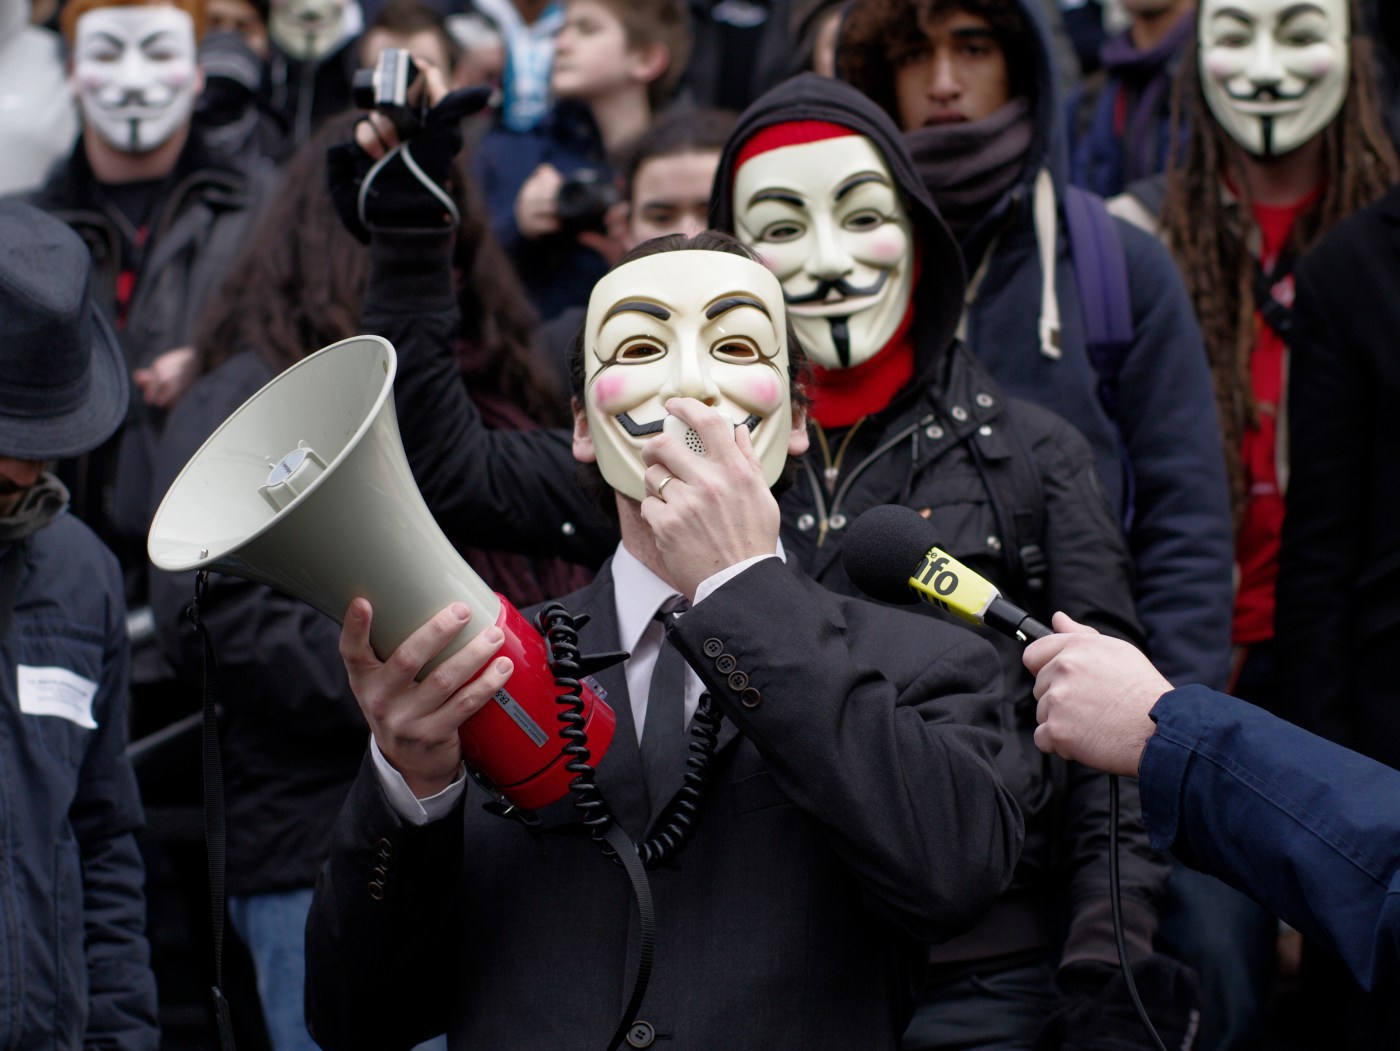 Anonymous слил большой список паролей, кредитных карт, а также фильм “The interview” от Sony - 1